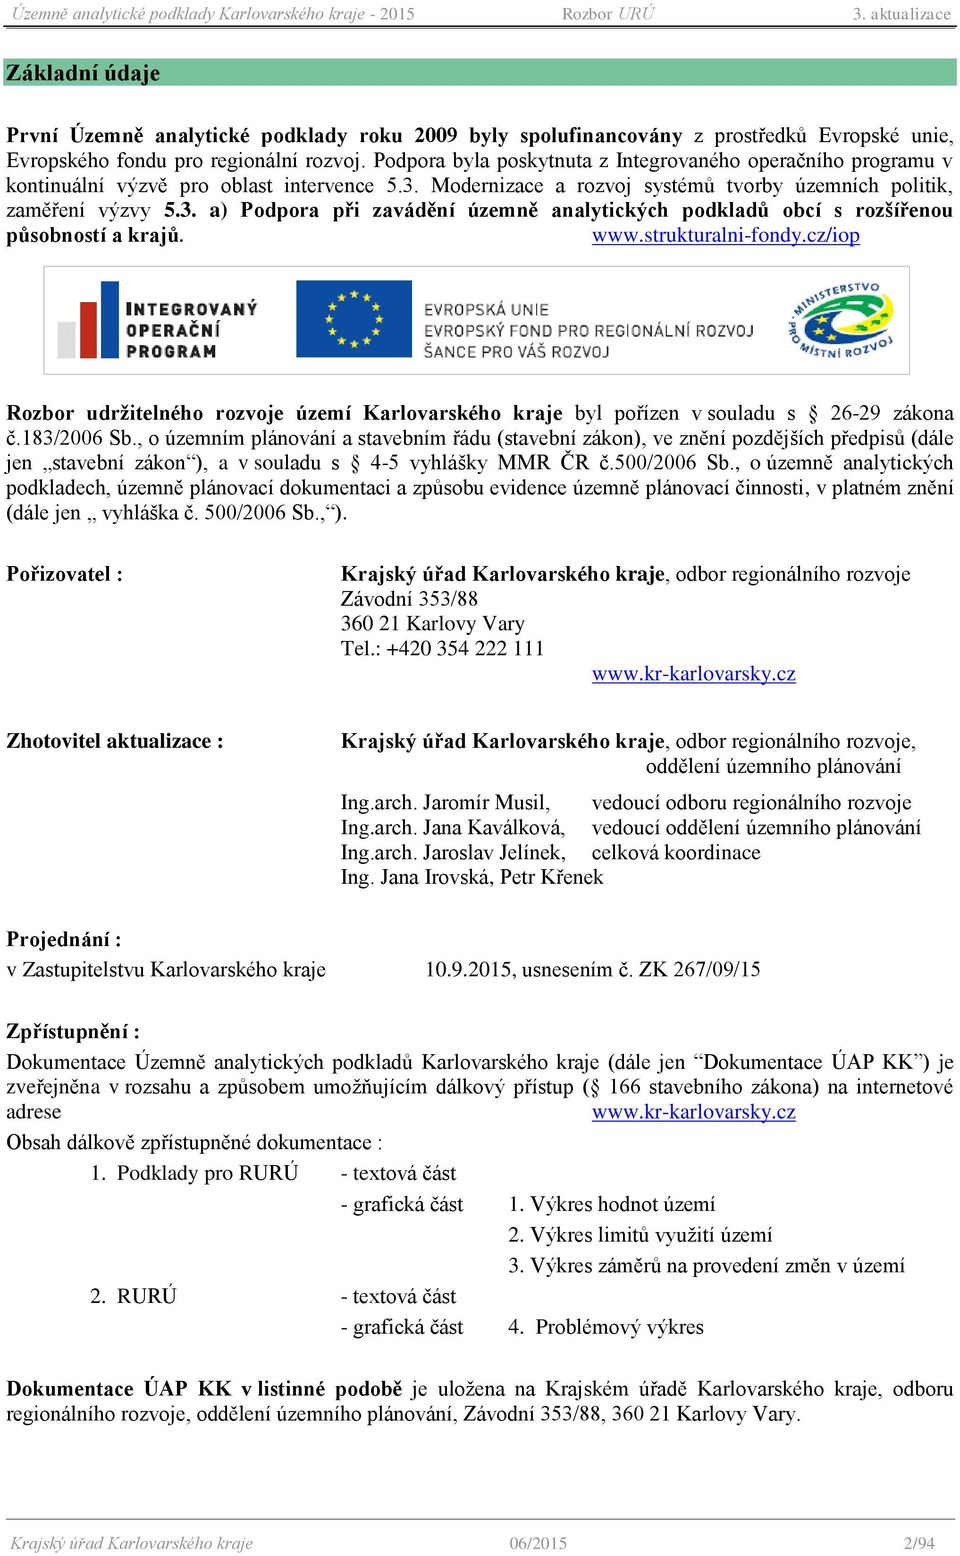 www.strukturalni-fndy.cz/ip Rzbr udržitelnéh rzvje území Karlvarskéh kraje byl přízen v suladu s 26-29 zákna č.183/2006 Sb.